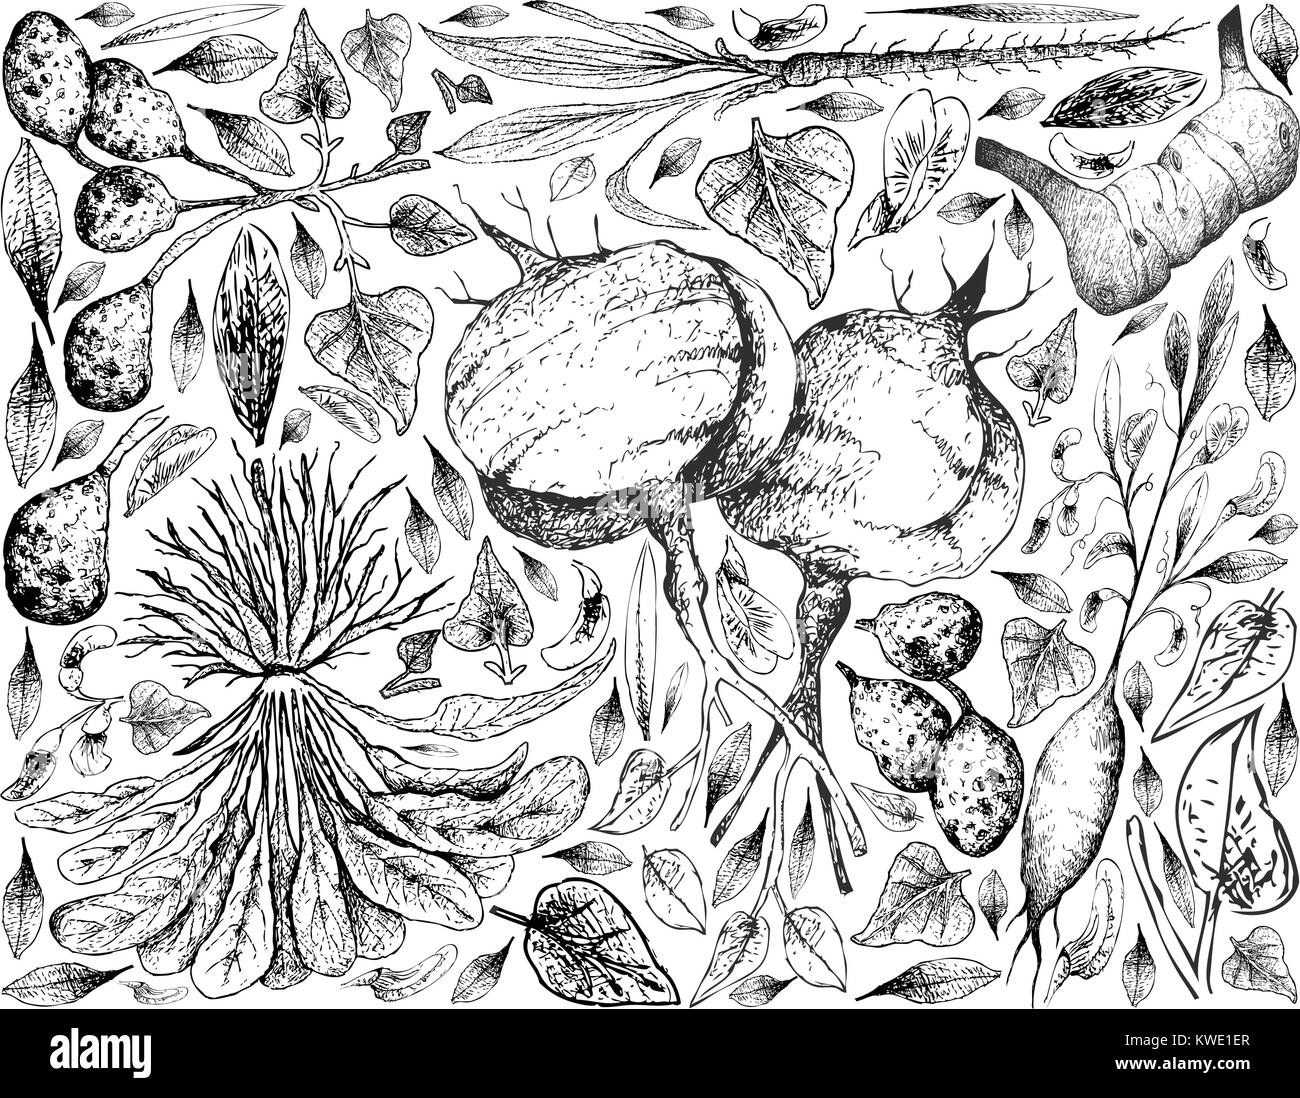 Root und knötchenförmige Gemüse, Hintergrund von Hand gezeichnete Skizze von Ulluco, Skirret, Schwarzwurzel, Jicama, Galgant und Earthnut Pea Pflanzen ist Stock Vektor